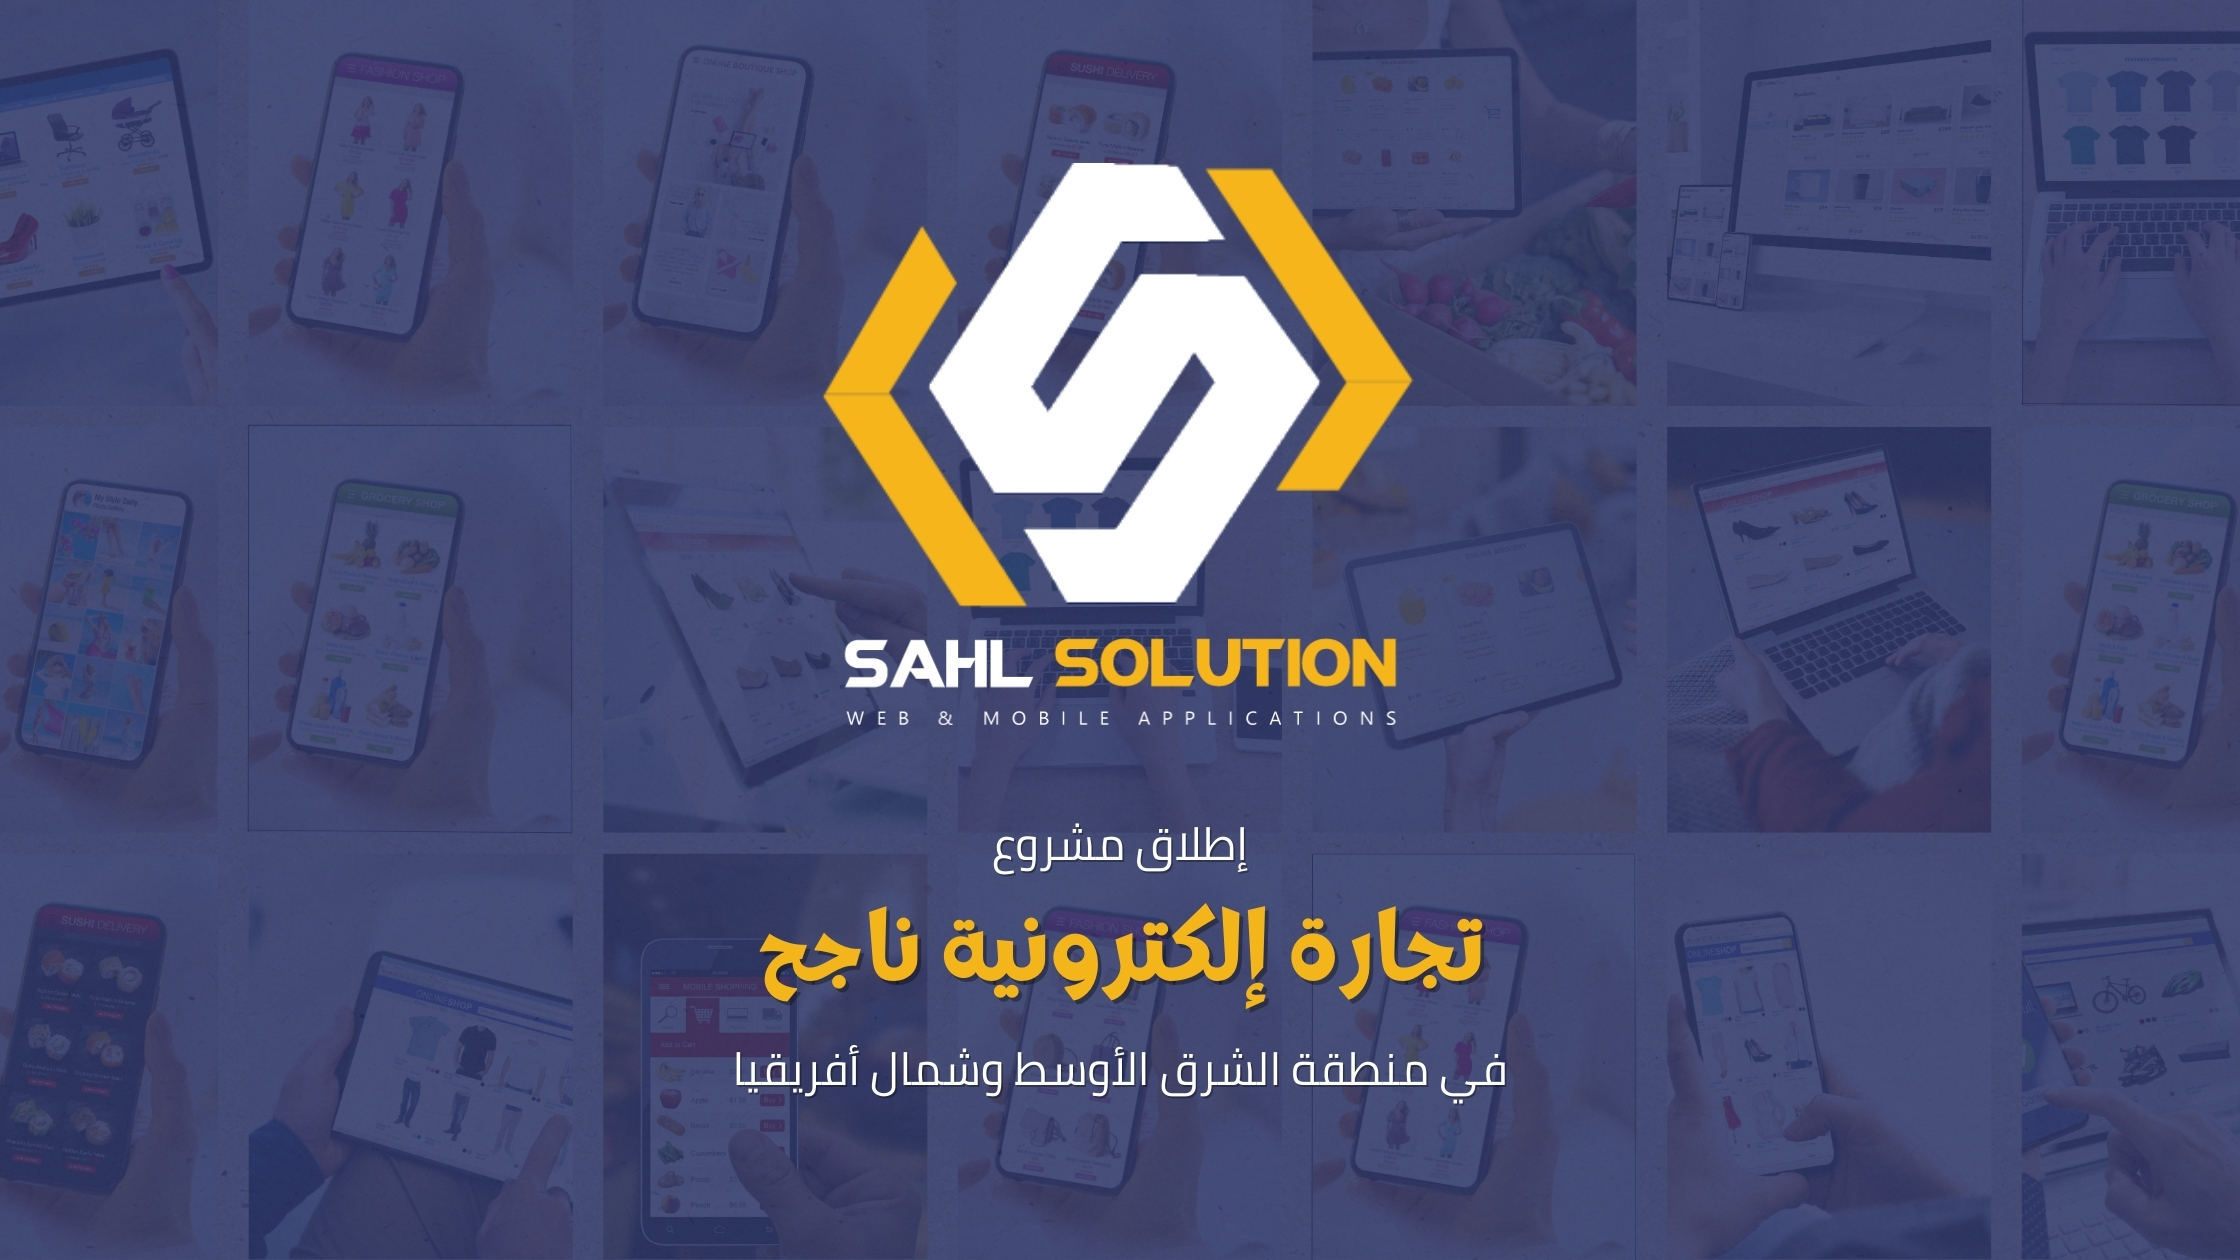 إطلاق مشروع تجارة إلكترونية ناجح في منطقة الشرق الأوسط وشمال أفريقيا